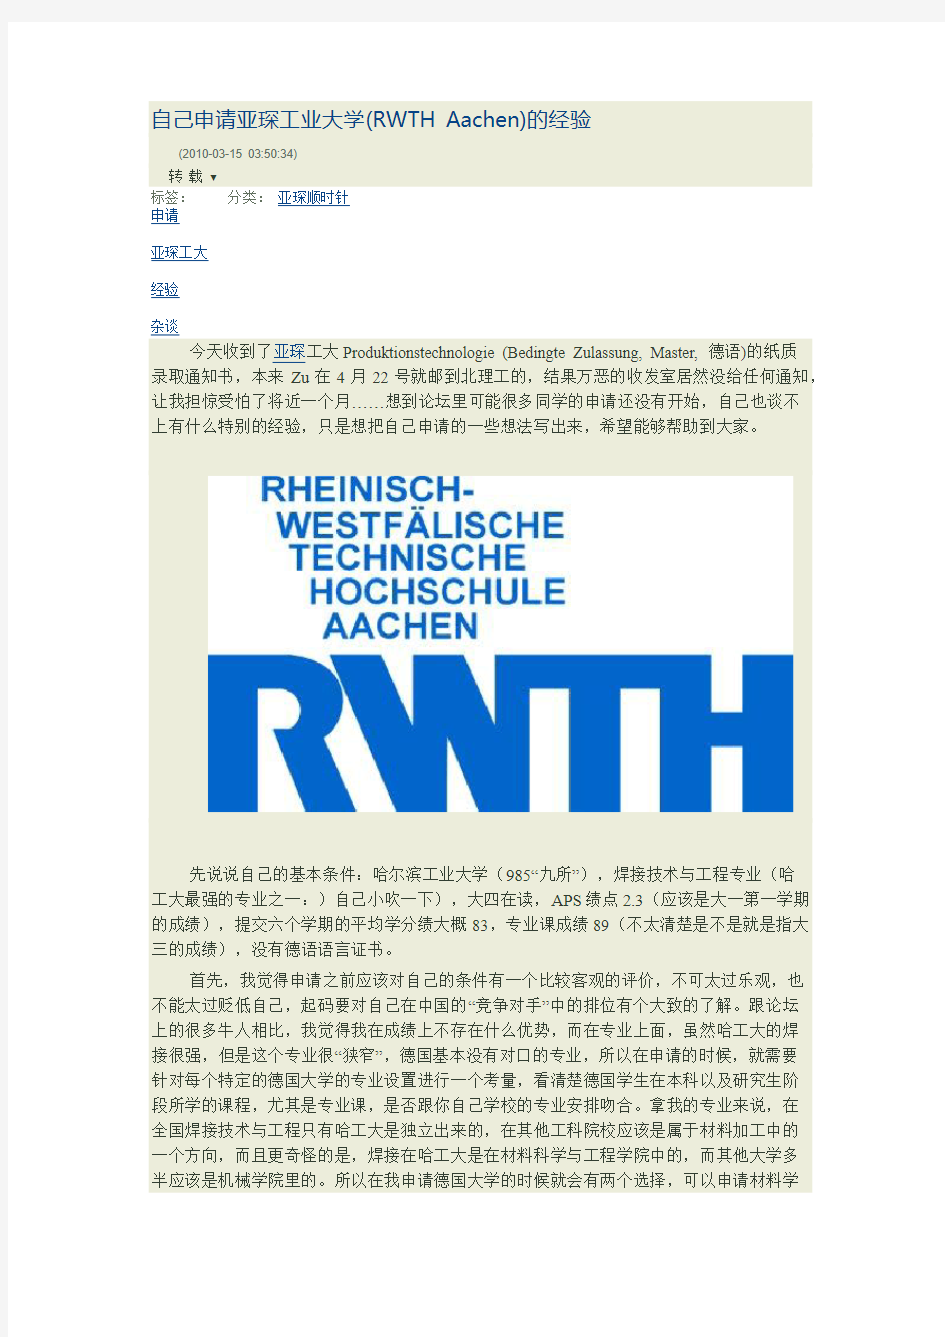 自己申请亚琛工业大学(RWTH Aachen)的经验